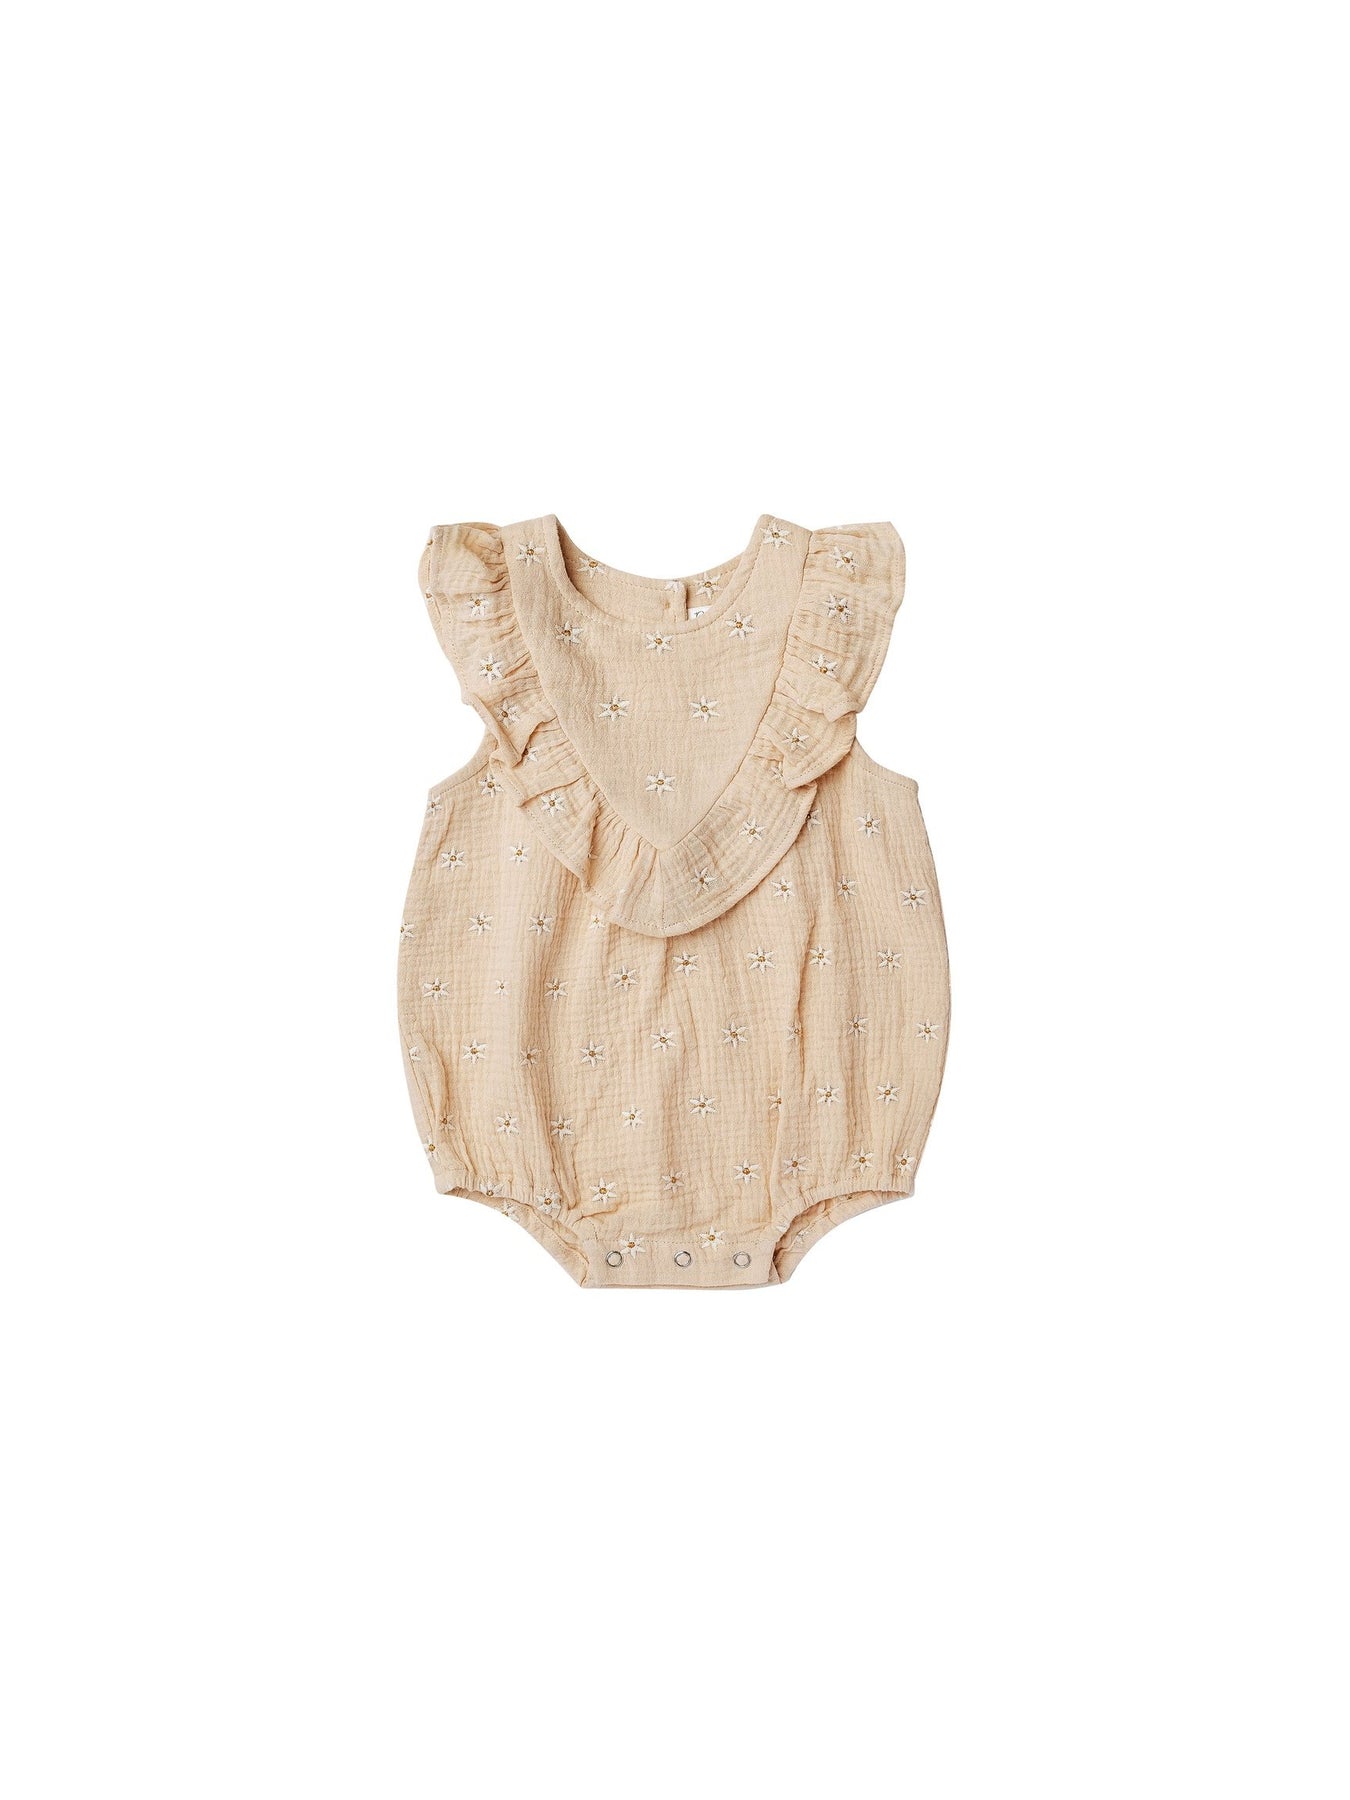 Baby Girl Clothes Boutique | Posh Tots Children's Boutique